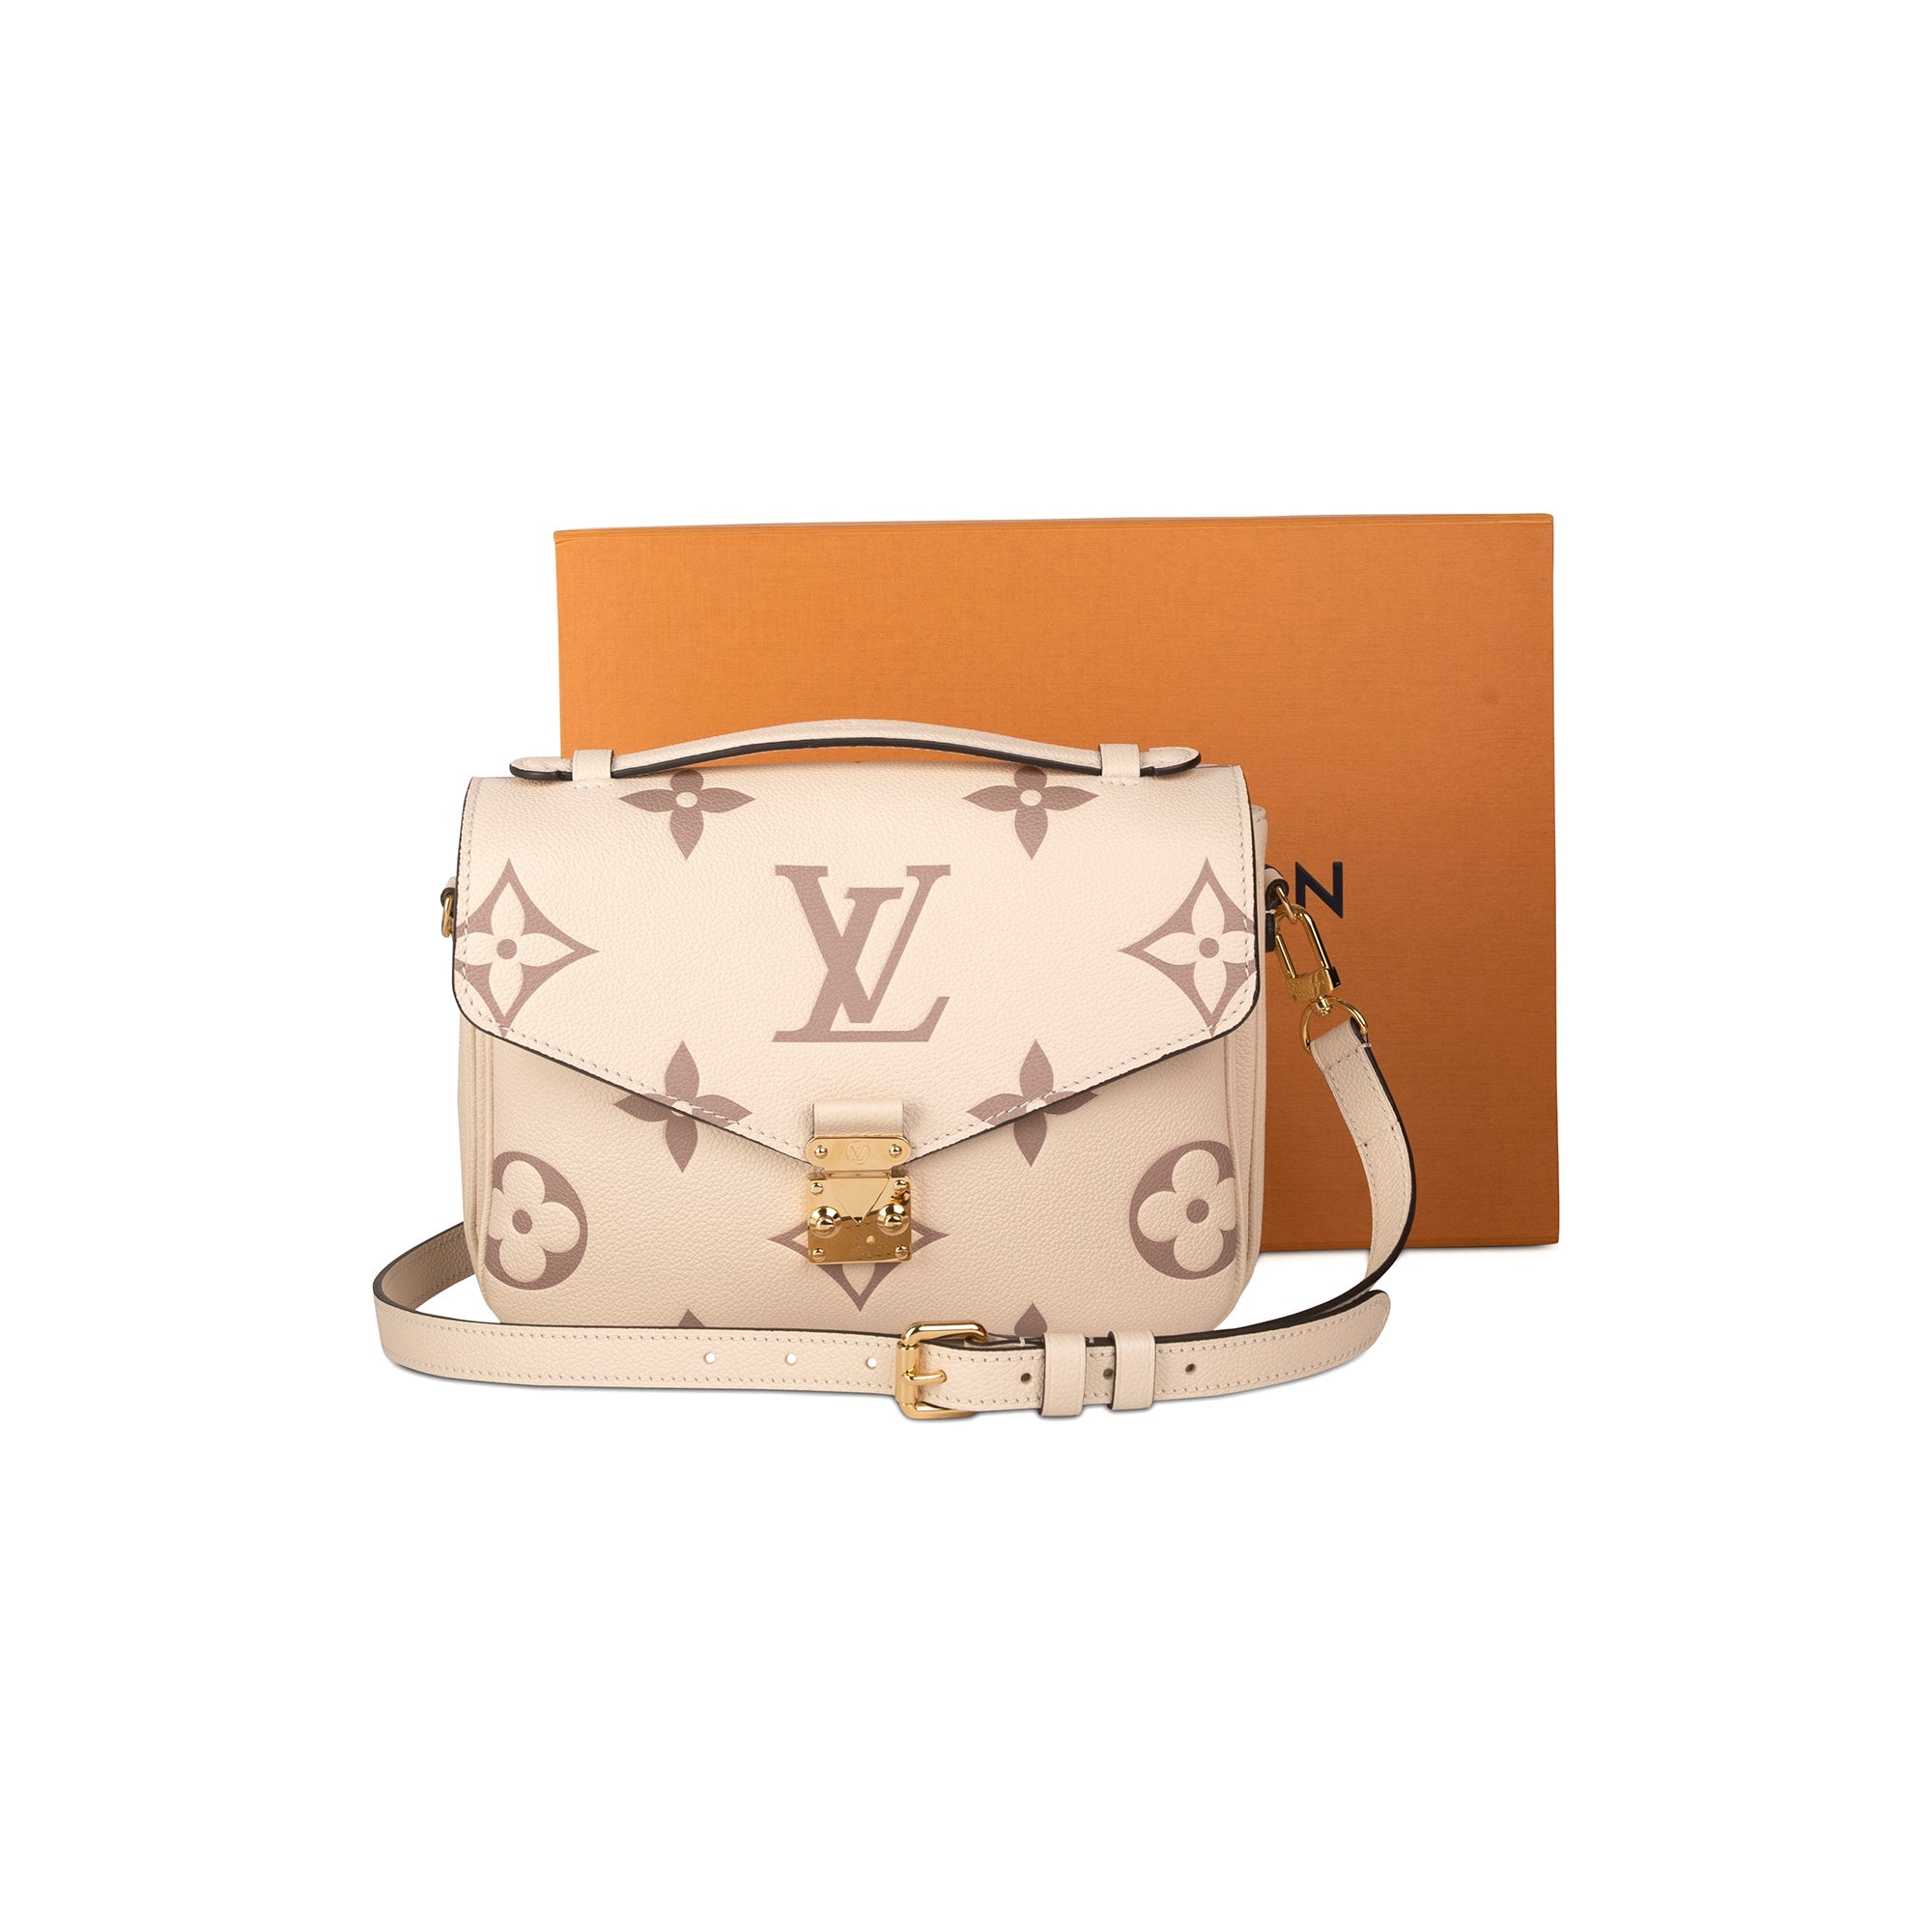 Authentic Louis Vuitton Empreinte Leather Pochette Metis Bicolor Monogram  Bag